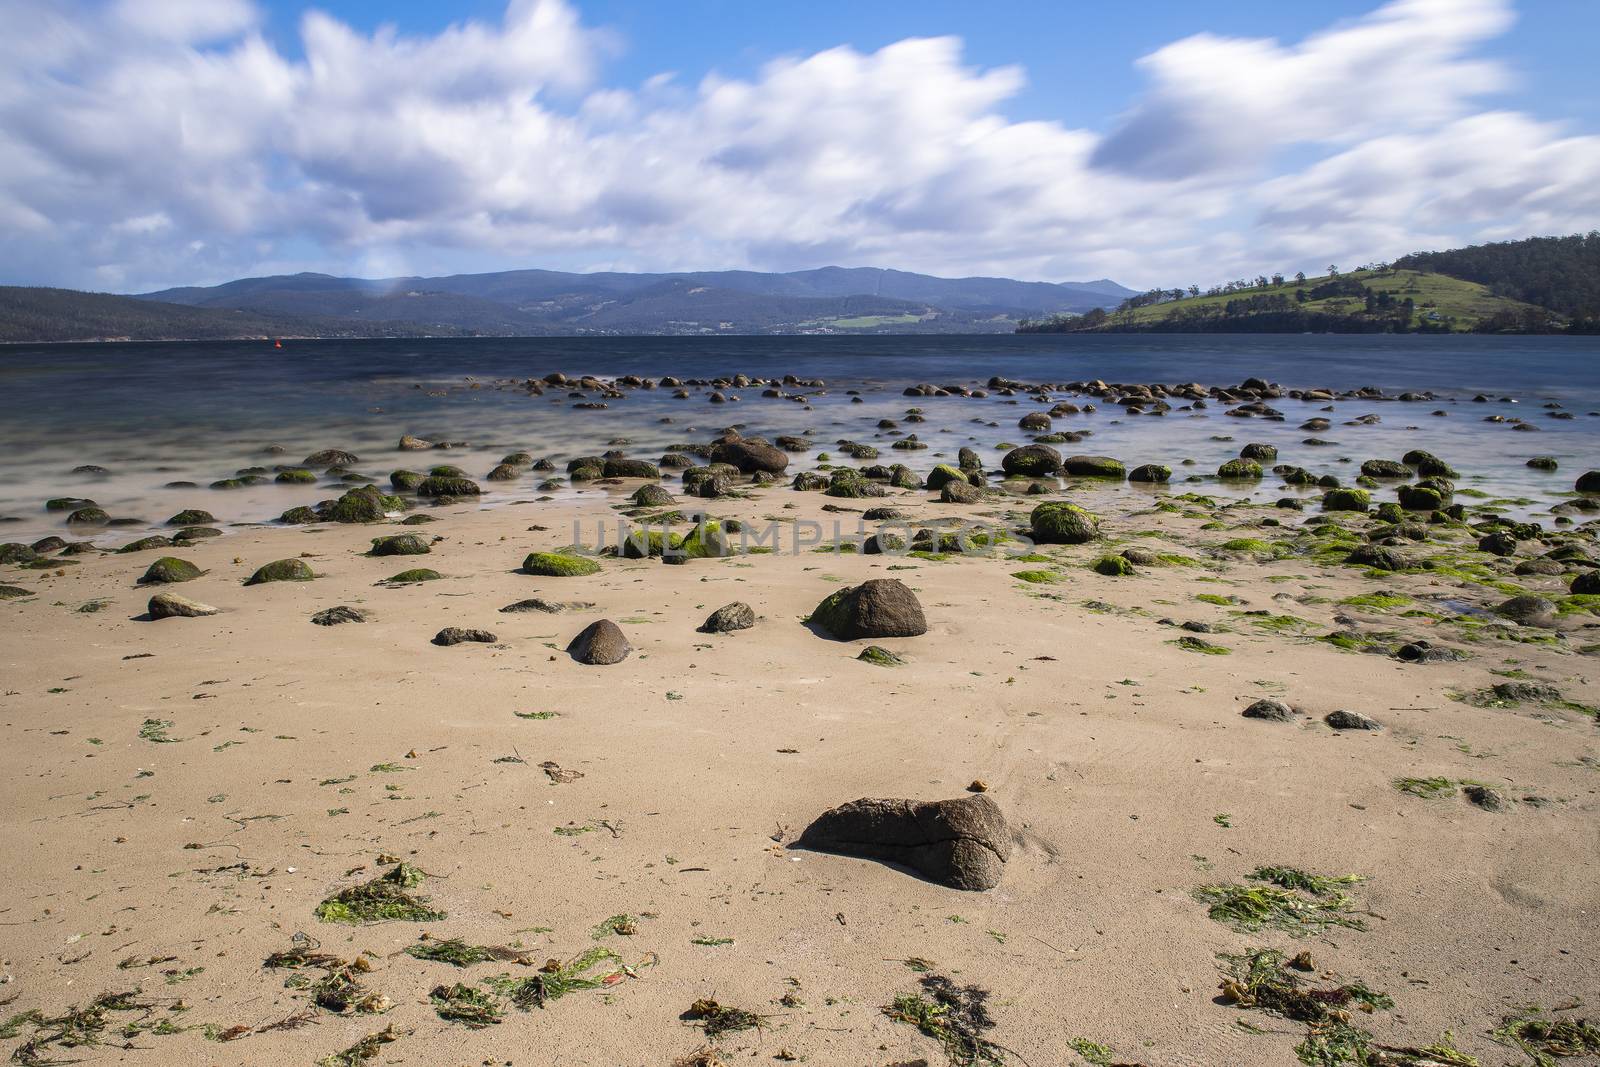 Dennes Point beach located on Bruny Island in Tasmania. by artistrobd